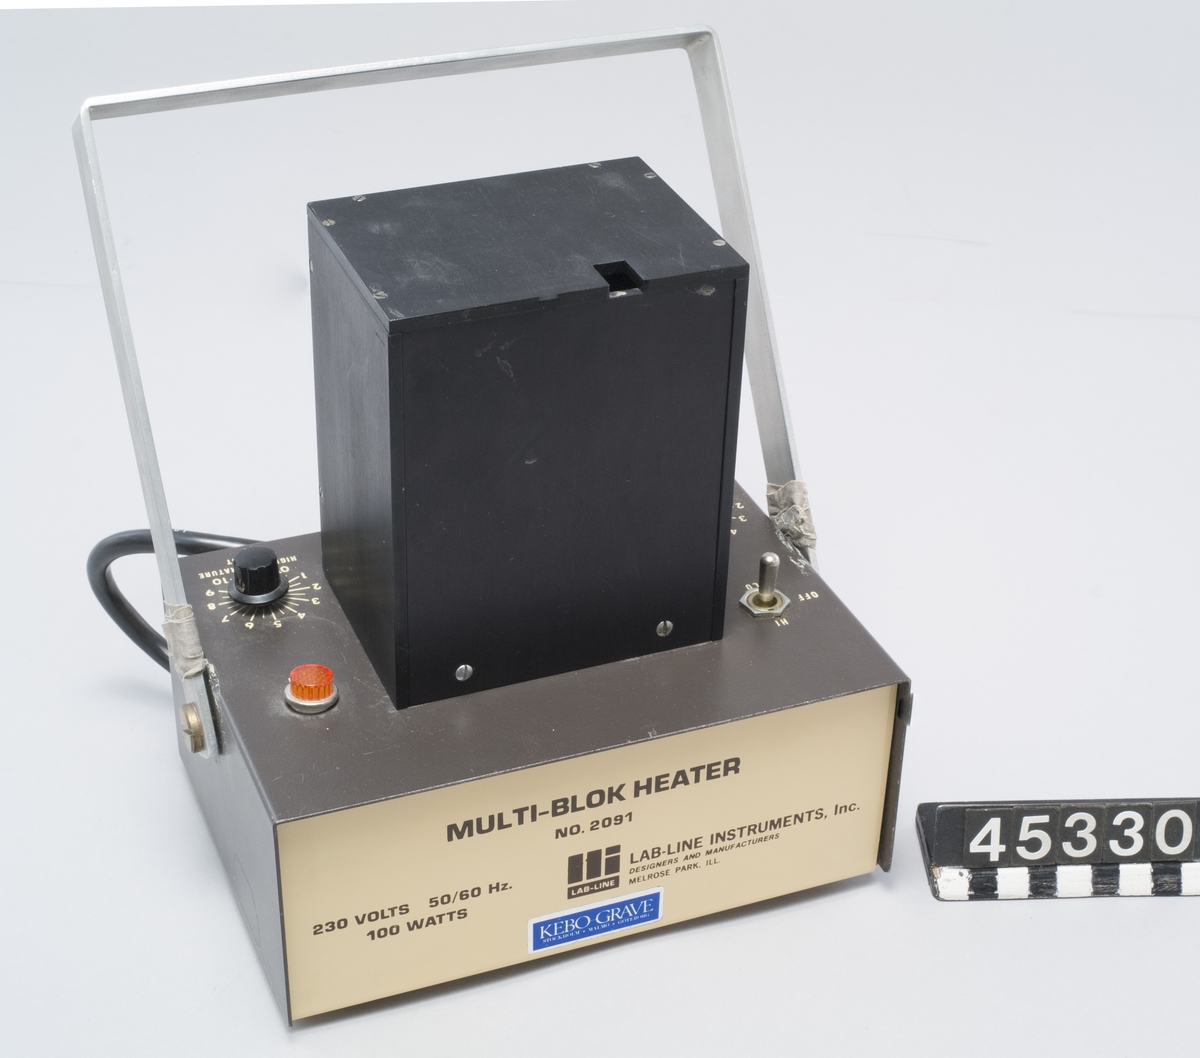 Värmare för preparat i provör. Tillverkare Lab-line Instruments, Inc. modell Multi-blok Heater typ 2091 Till värmaren hör en svart metallbox med plats för sex provrör, det finns en ursparing för termometer i locket.